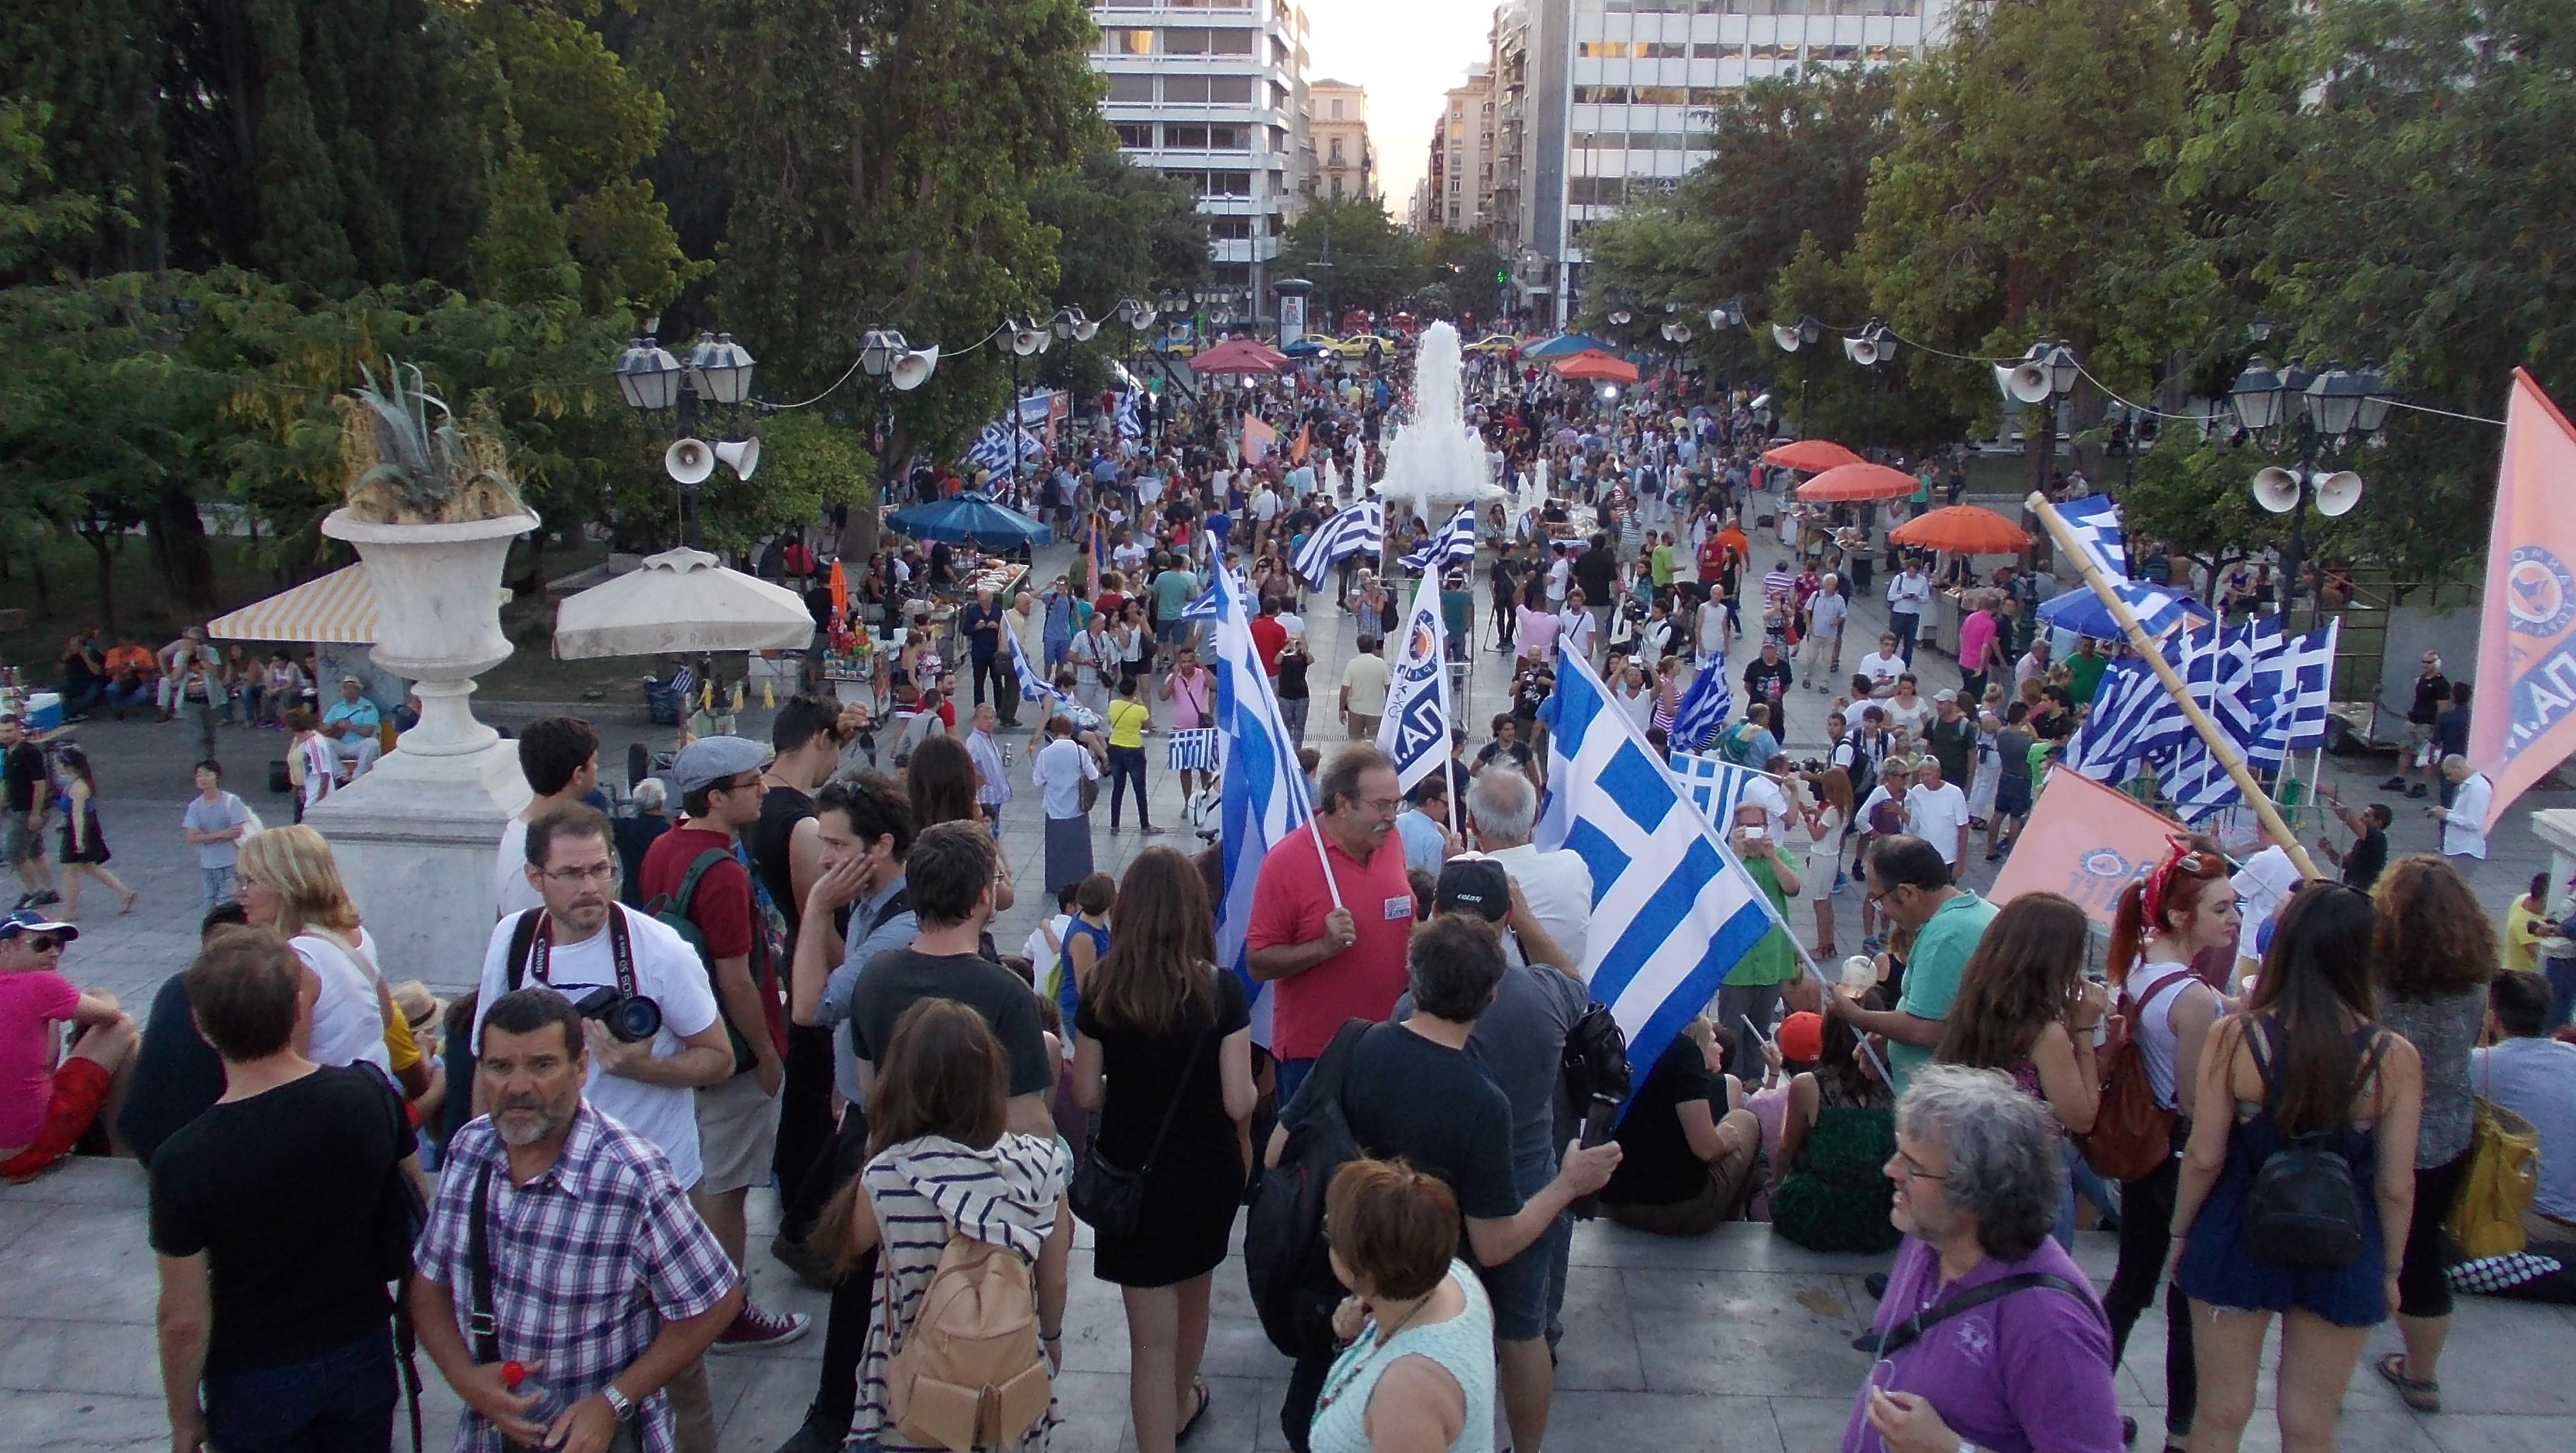  Ganó el «NO» en Grecia: Crónica desde Atenas del corresponsal itinerante de En Perspectiva